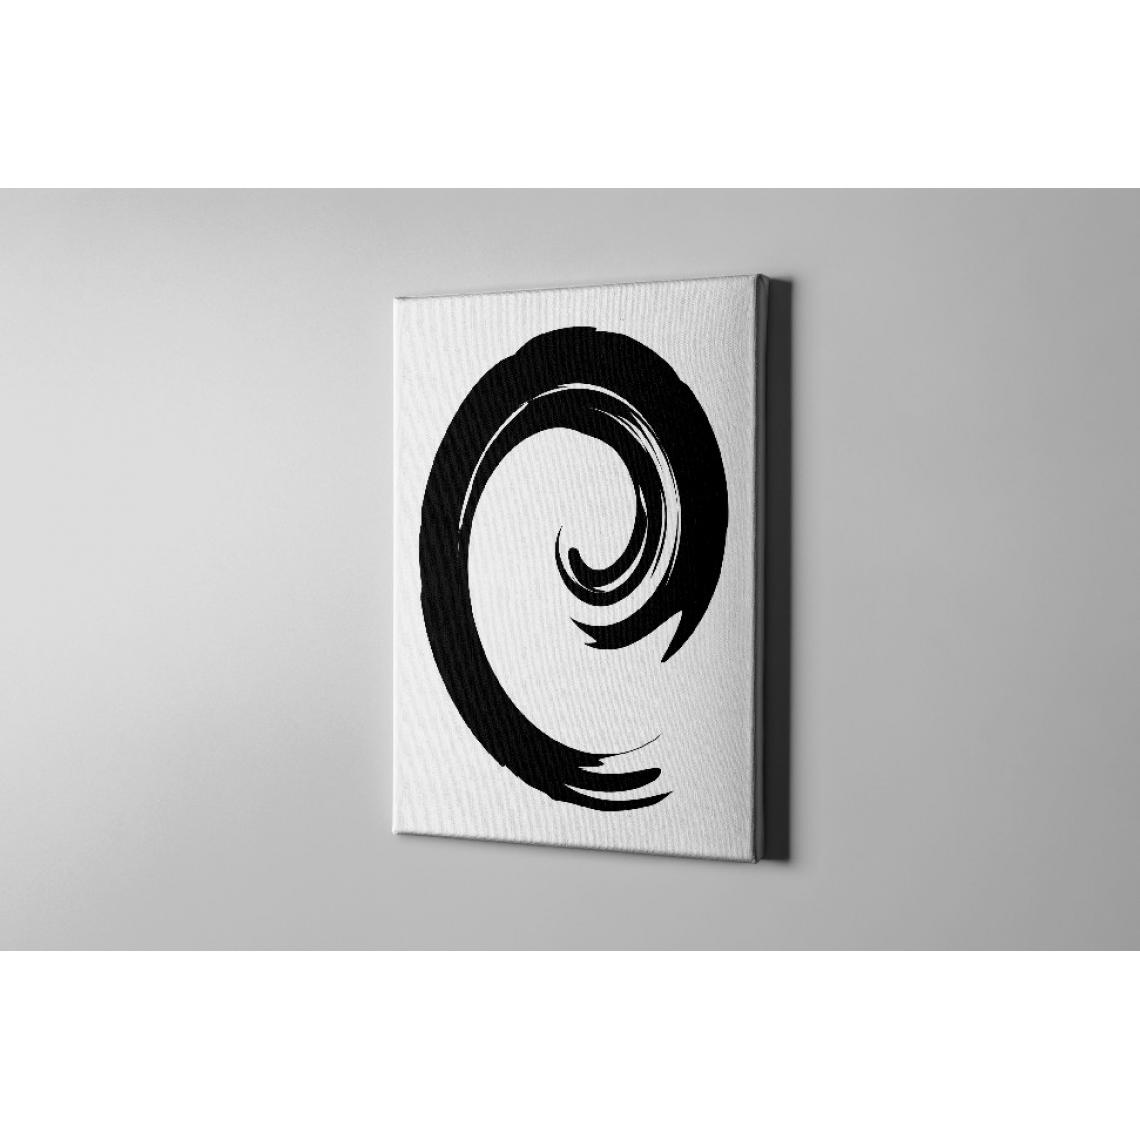 Homemania - HOMEMANIA Tableau sur toile Spirale - Blanc, noir - 100 x 3 x 150 cm - Tableaux, peintures